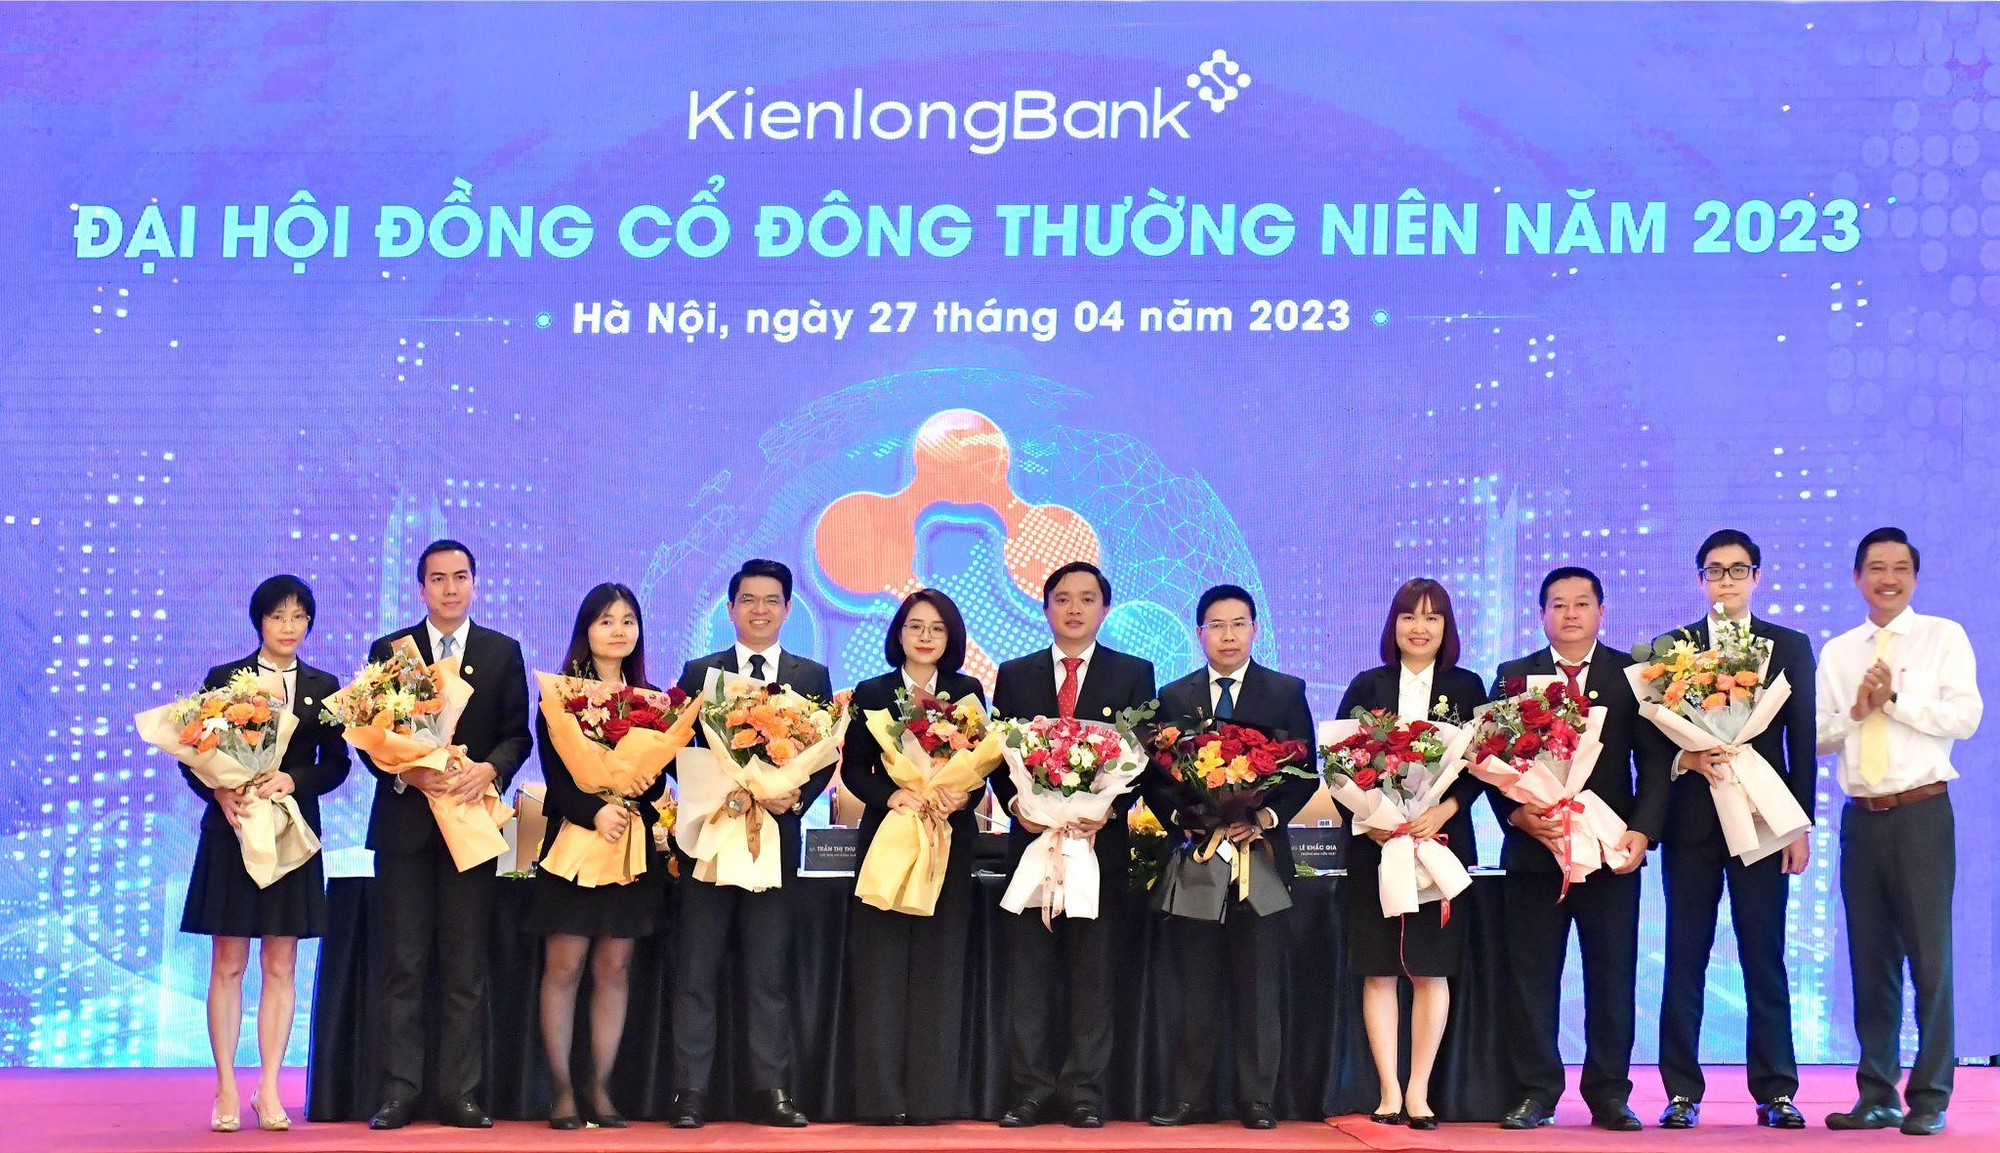 ĐHĐCĐ KienlongBank: Mục tiêu năm 2023 tăng trưởng ổn định, đẩy nhanh tốc độ chuyển đổi số toàn diện - Ảnh 2.